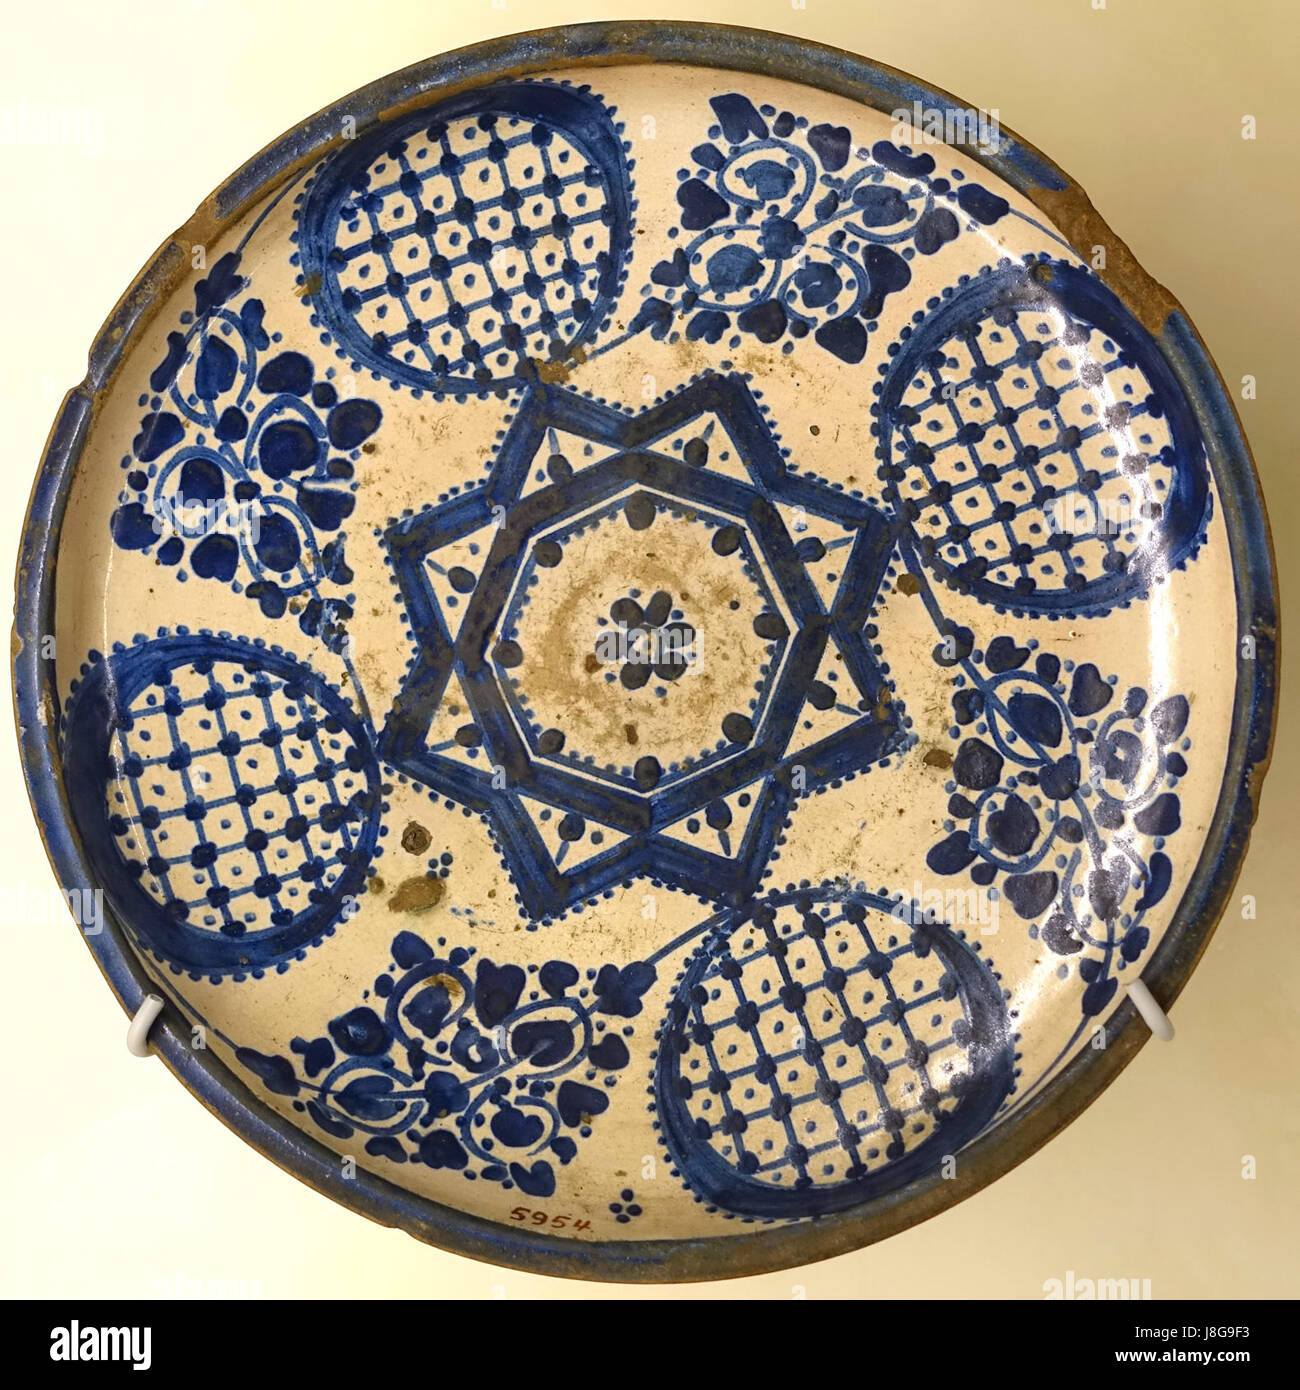 Dish, Fez, Morocco, 19th century AD, glazed ceramic   Cinquantenaire Museum   Brussels, Belgium   DSC09094 Stock Photo